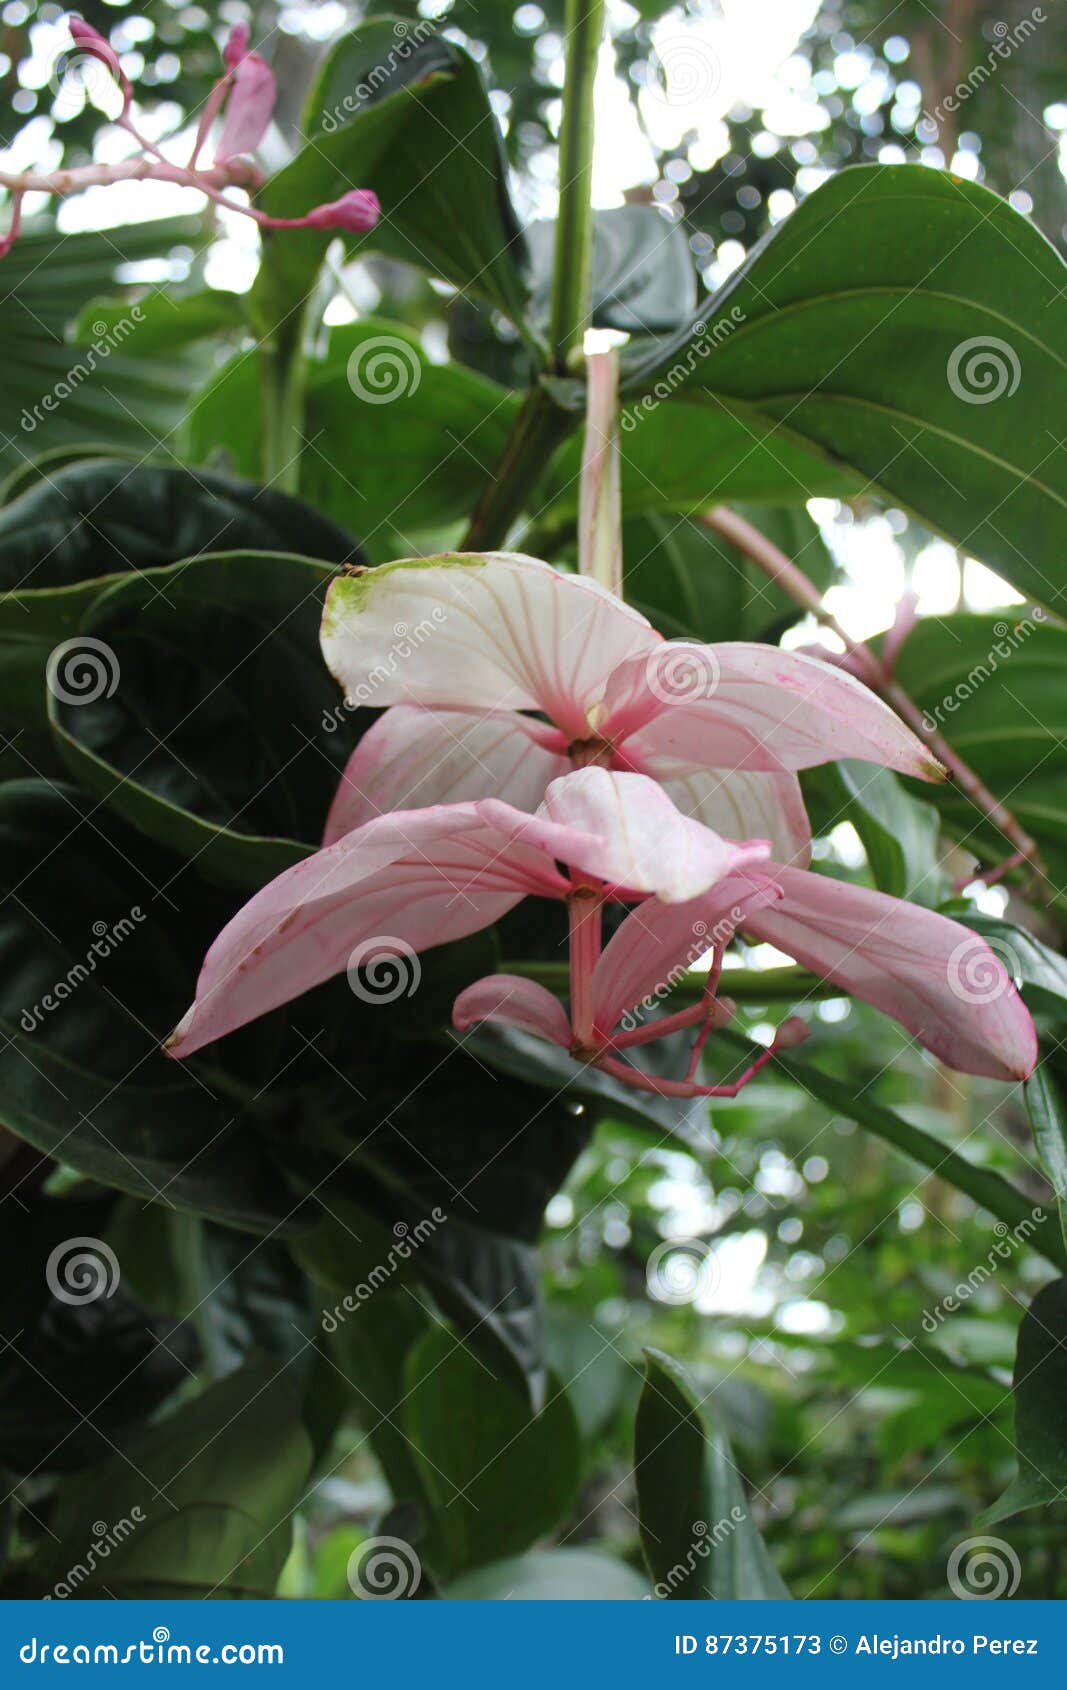 orquidea flowers